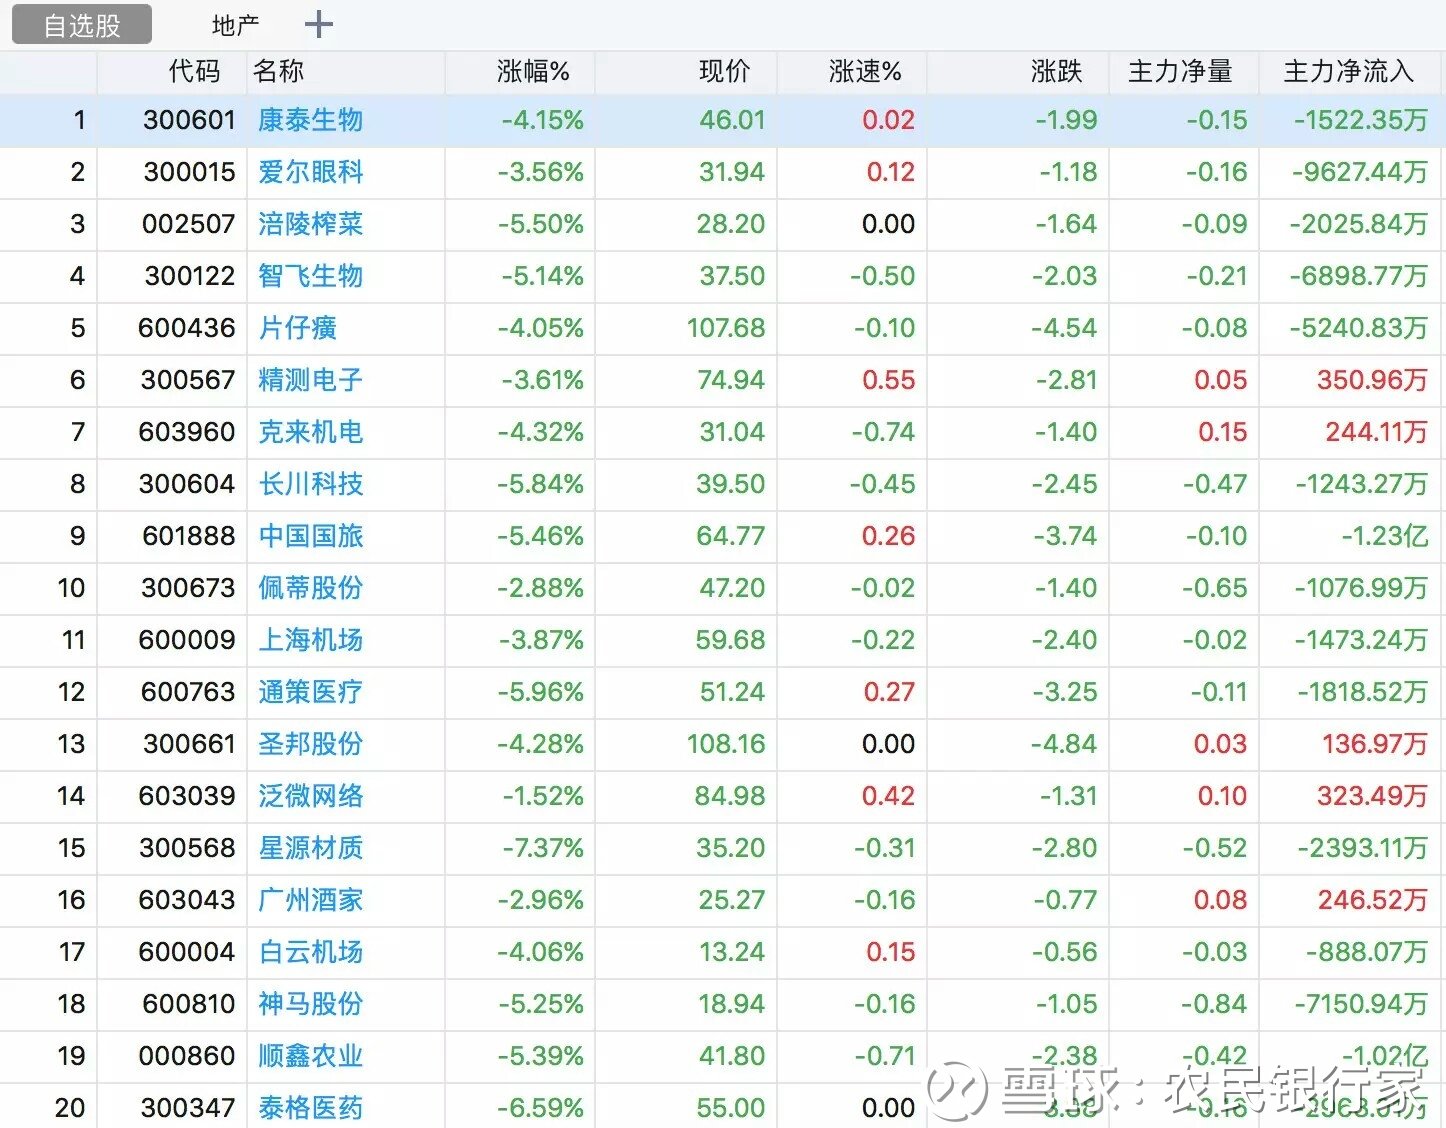 中国刚刚失去了世界第二大股票市场的排名,由